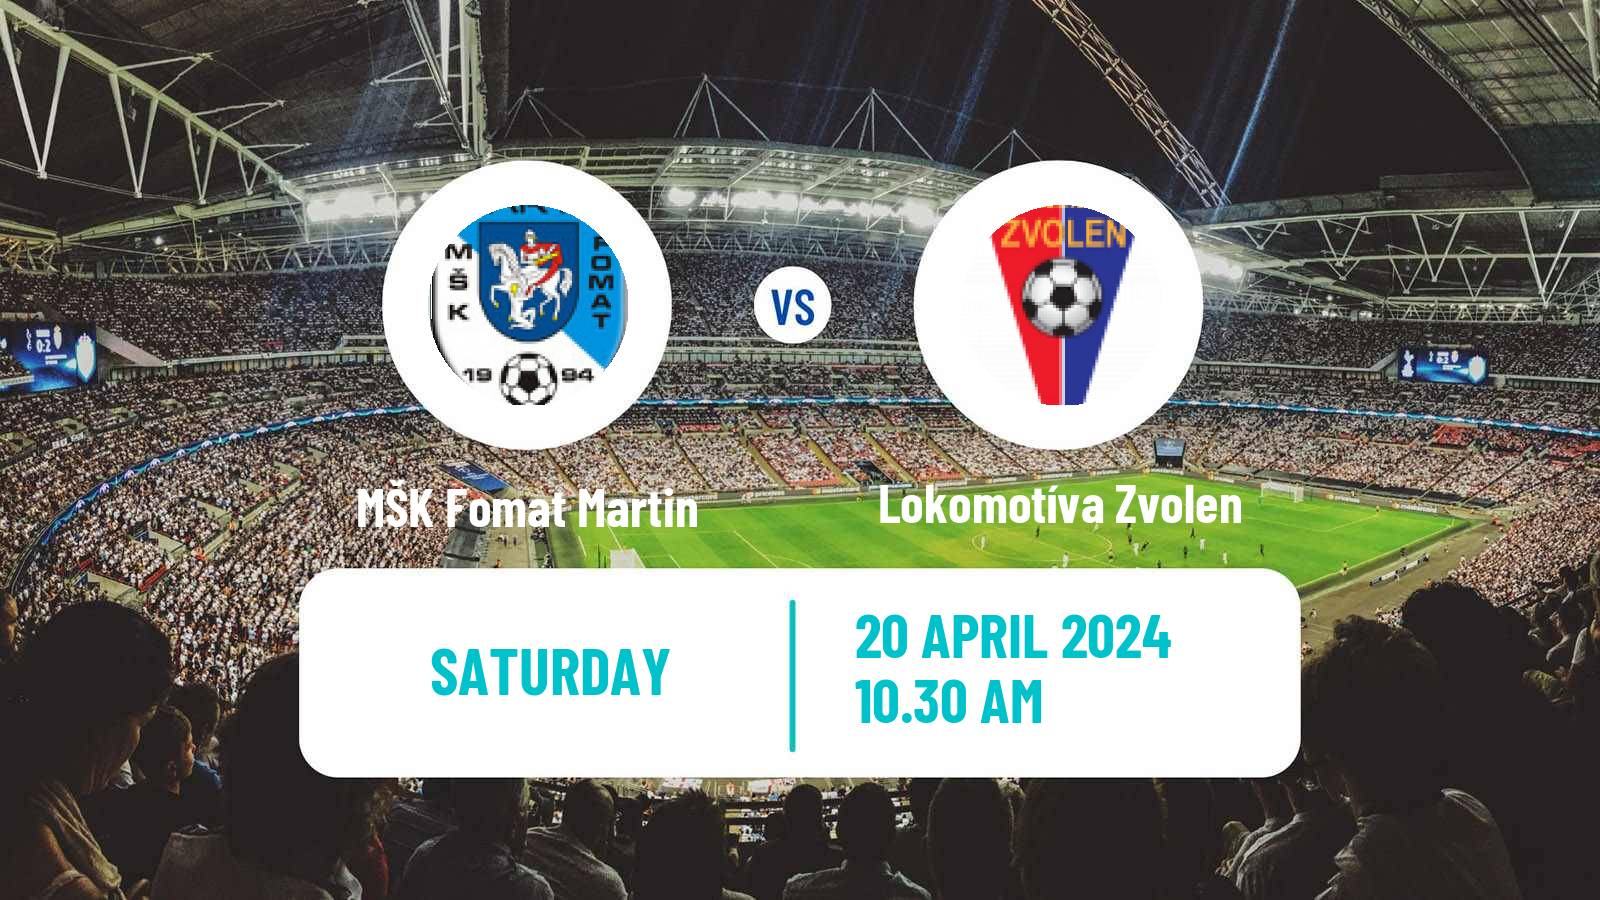 Soccer Slovak 3 Liga West MŠK Fomat Martin - Lokomotíva Zvolen